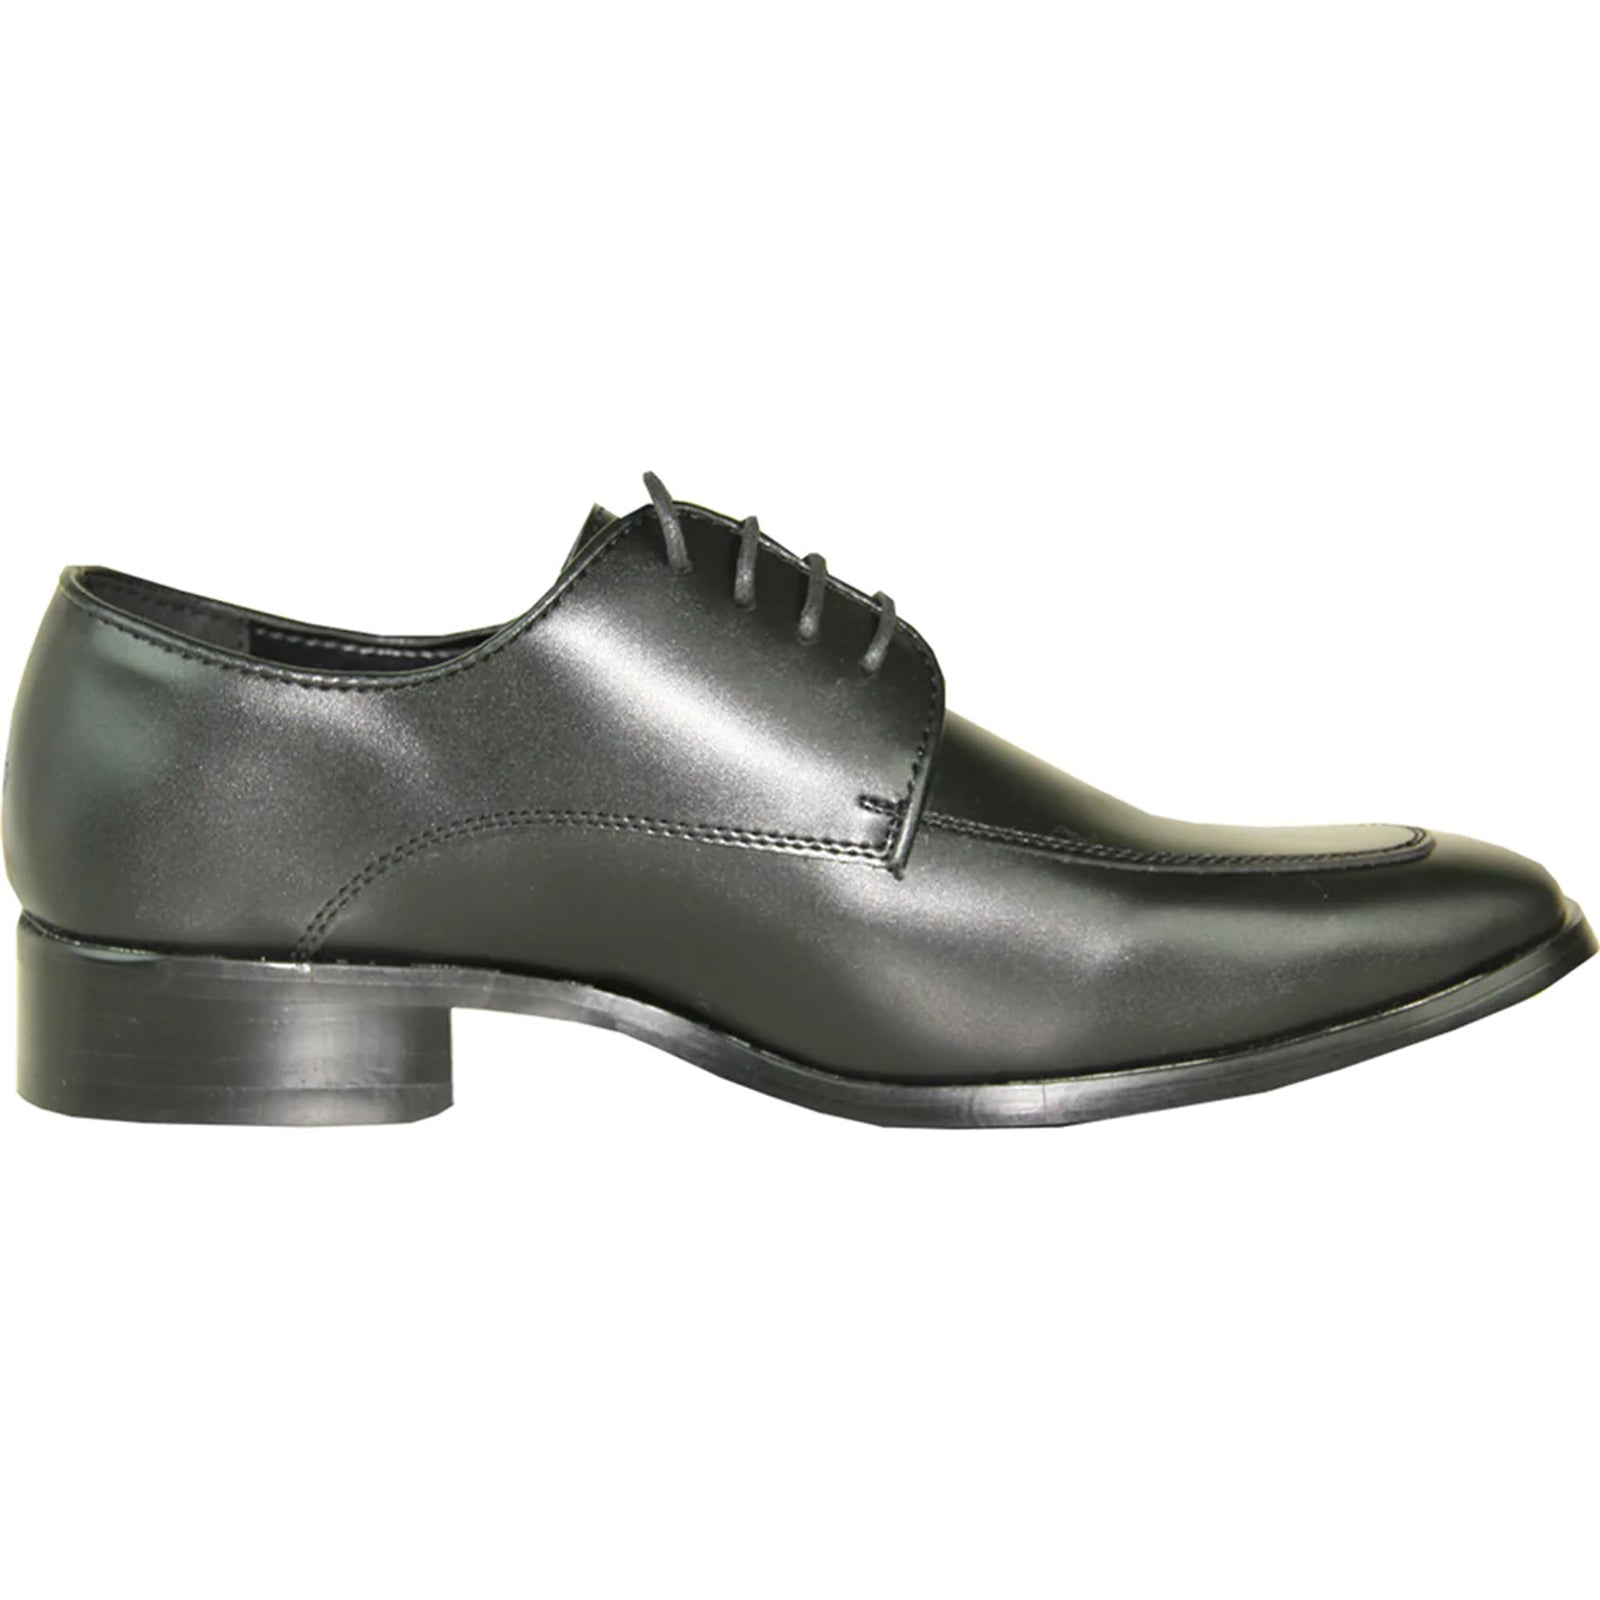 "Black Classic Moc Toe Men's Tuxedo Prom Shoe"